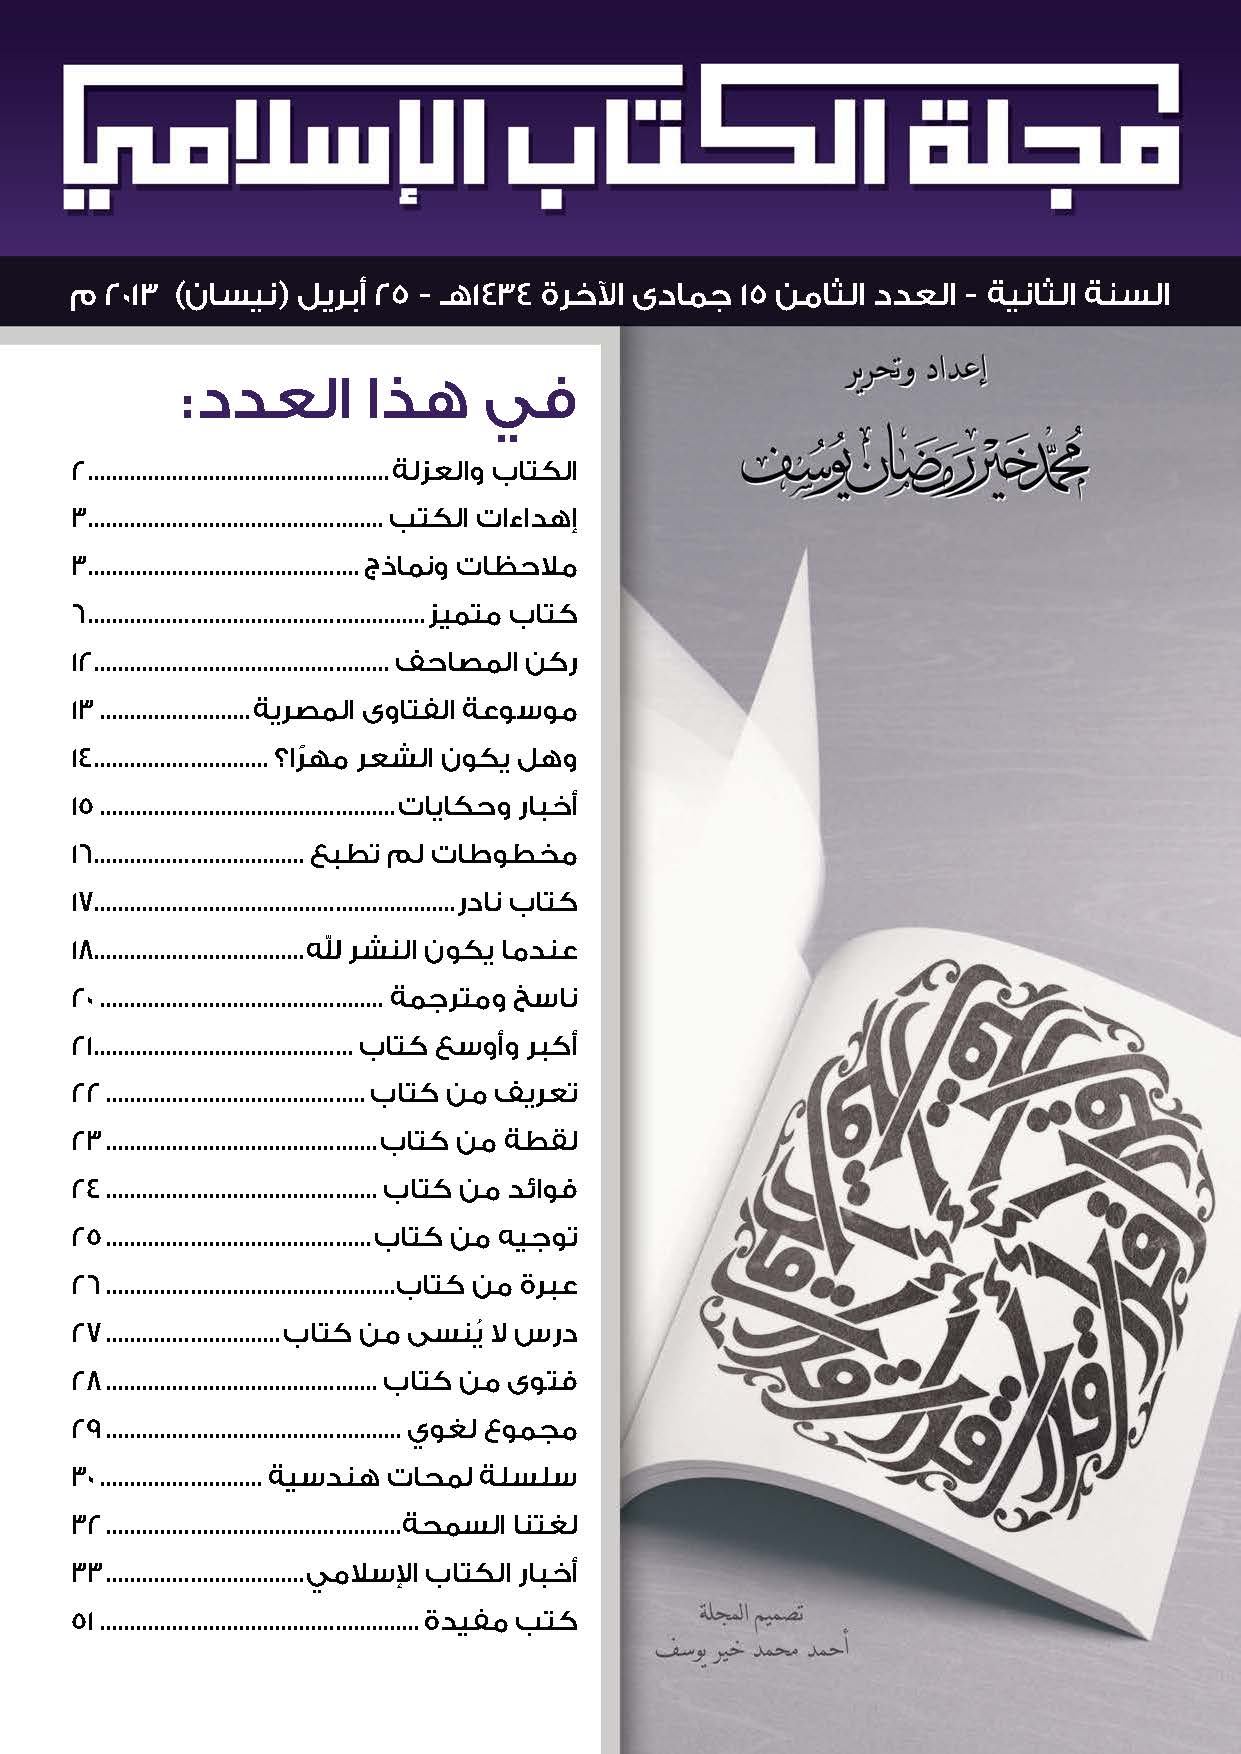 غلاف العدد الثامن من مجلة الكتاب الإسلامي